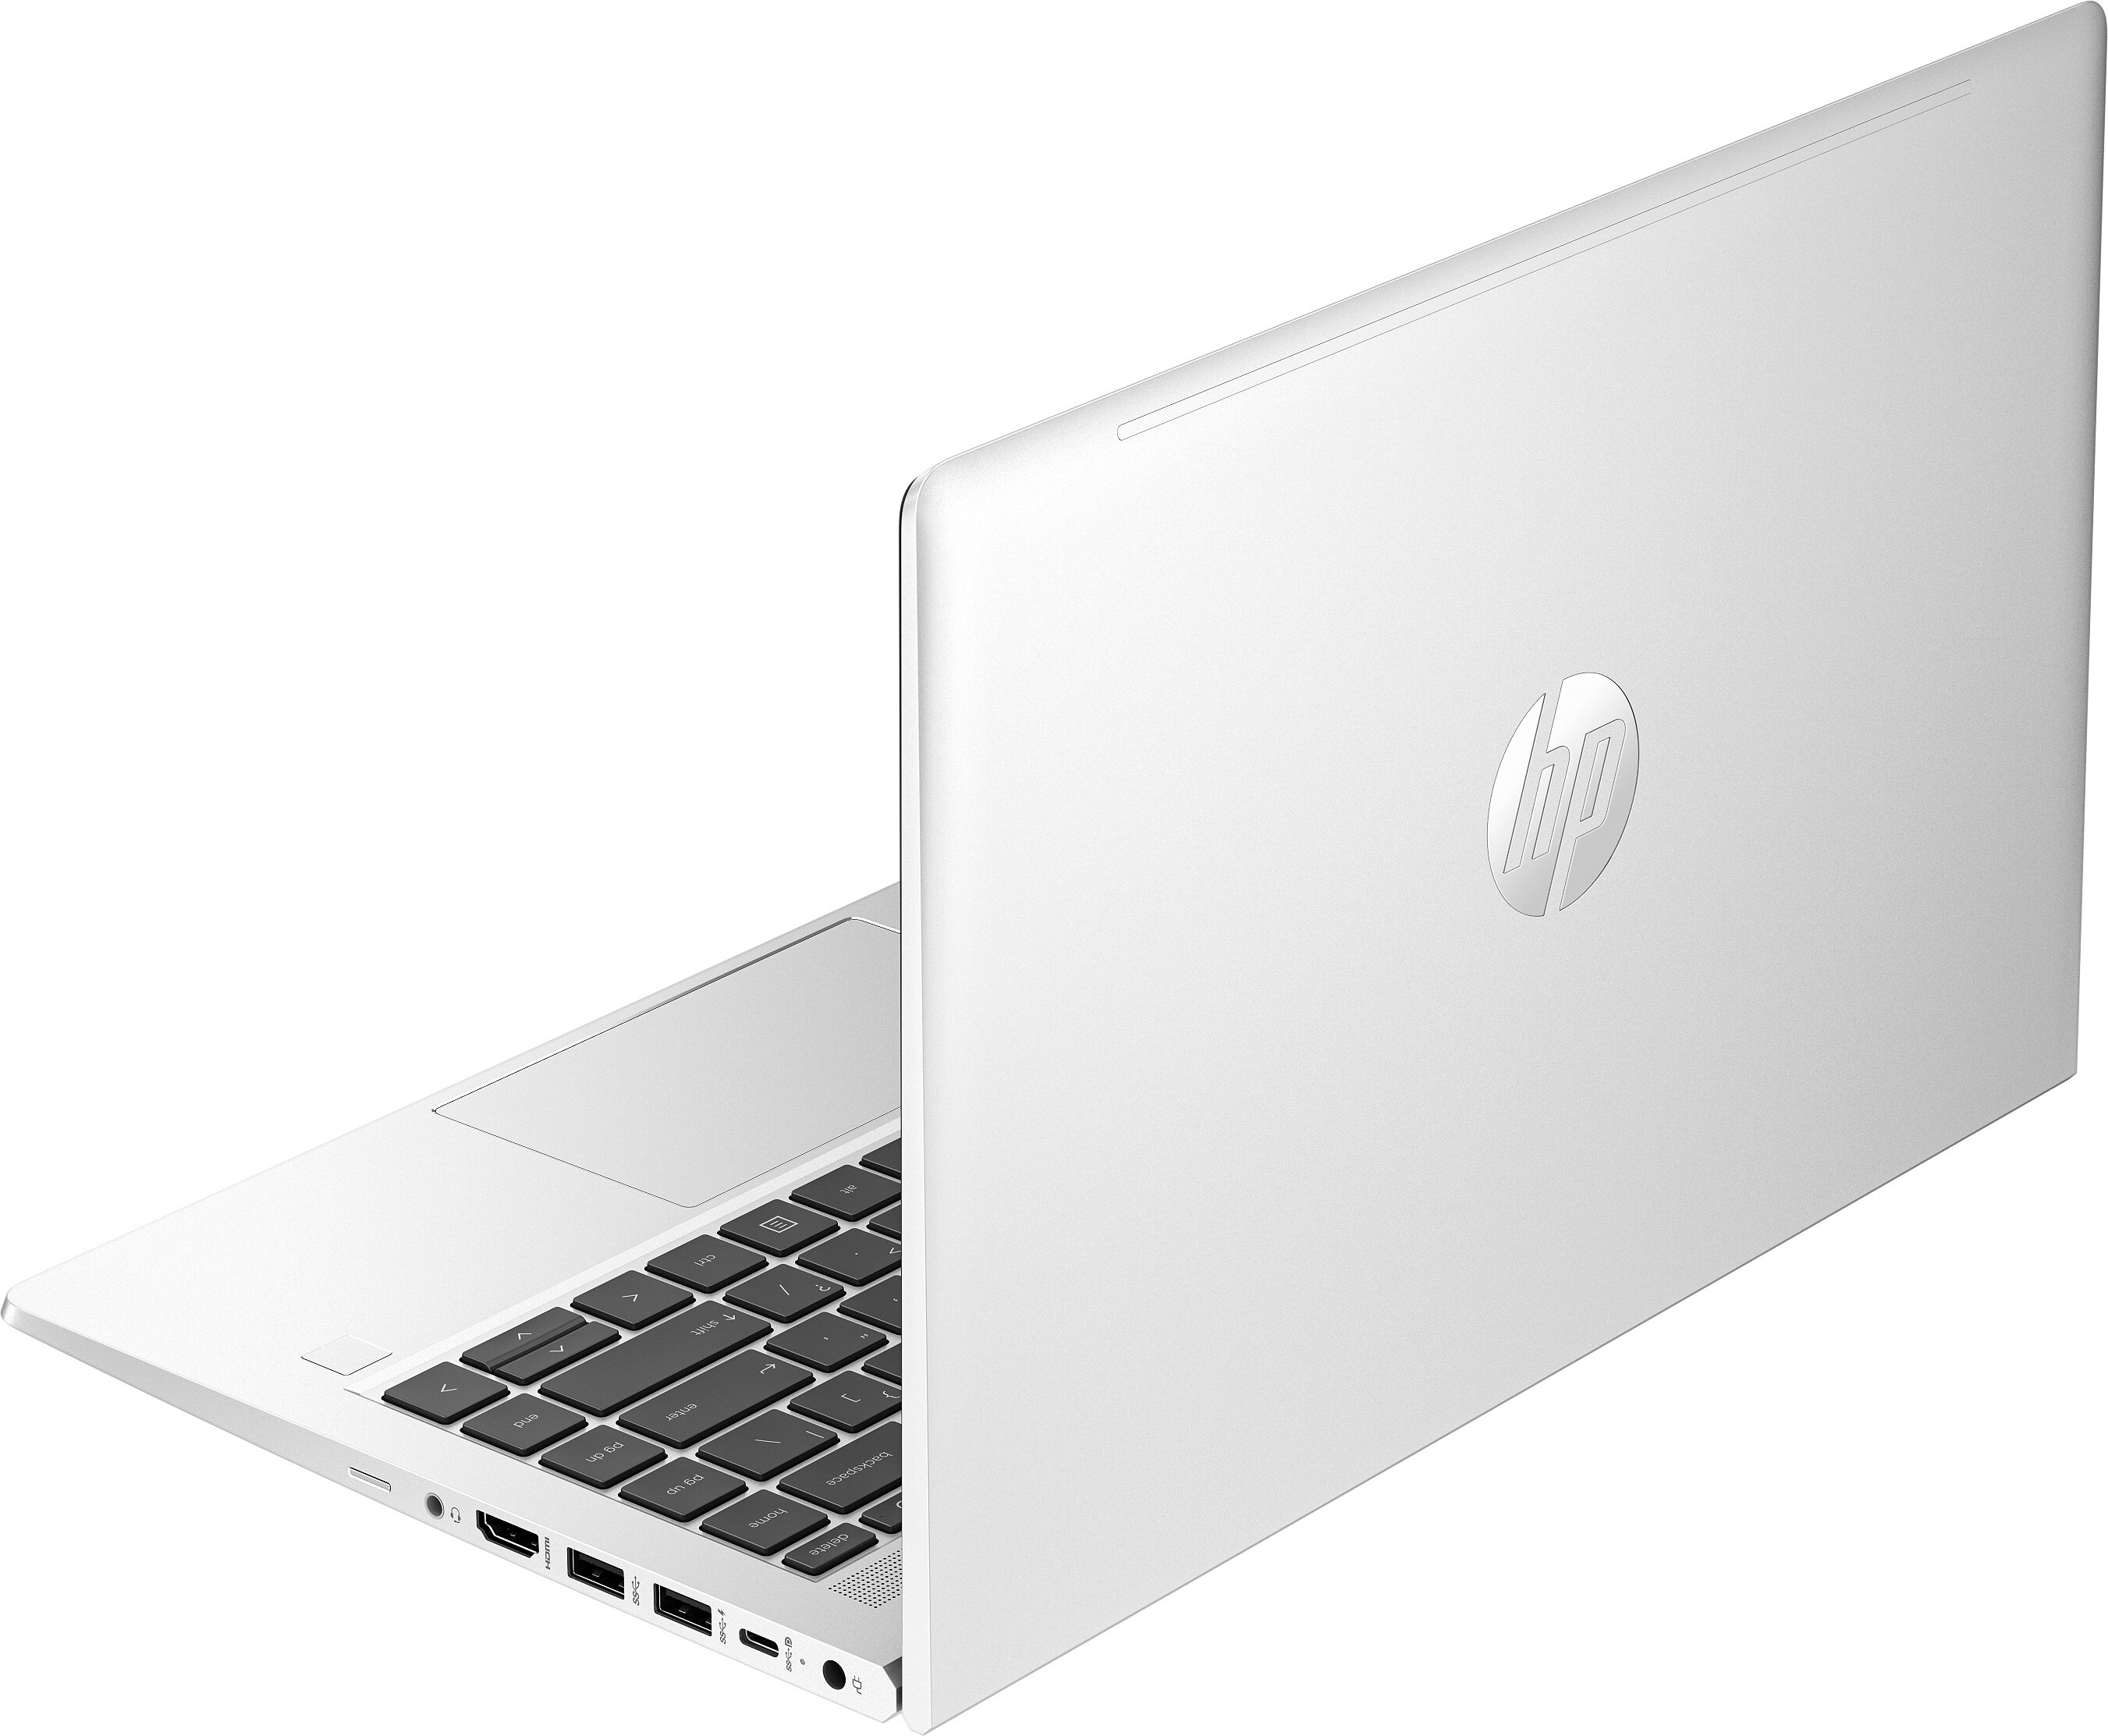 Ноутбук HP Probook 445-g10 (85c00ea)фото4